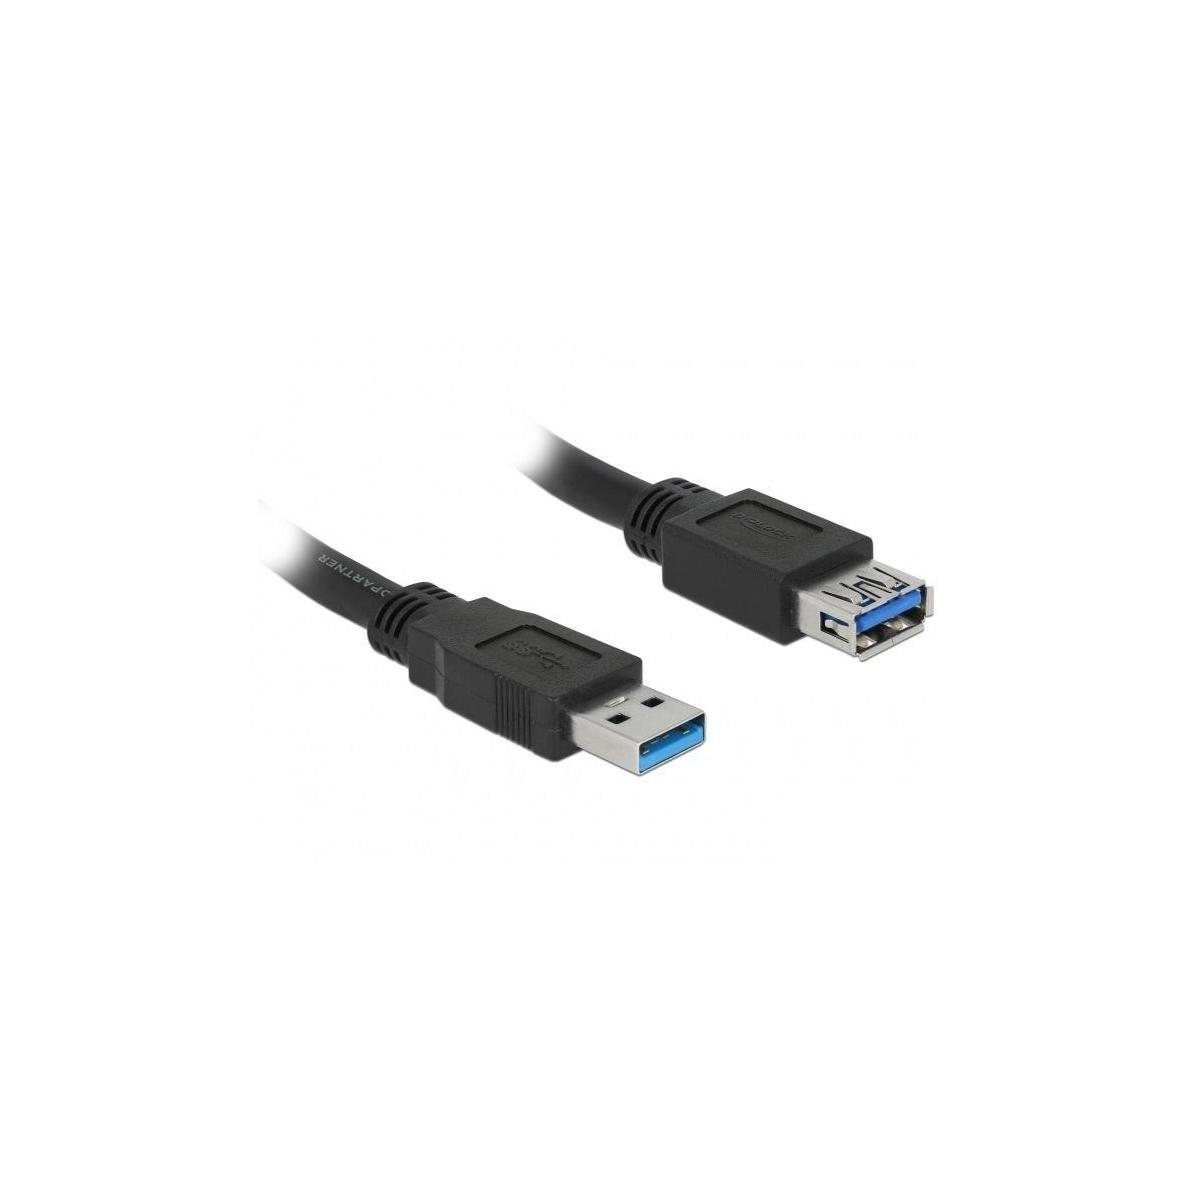 DELOCK DELOCK Kabel USB 3.0 3,0m Bu & Typ-A Peripheriegeräte Zubehör St & <lt/> Stecker/Steckverbinder, Schwarz